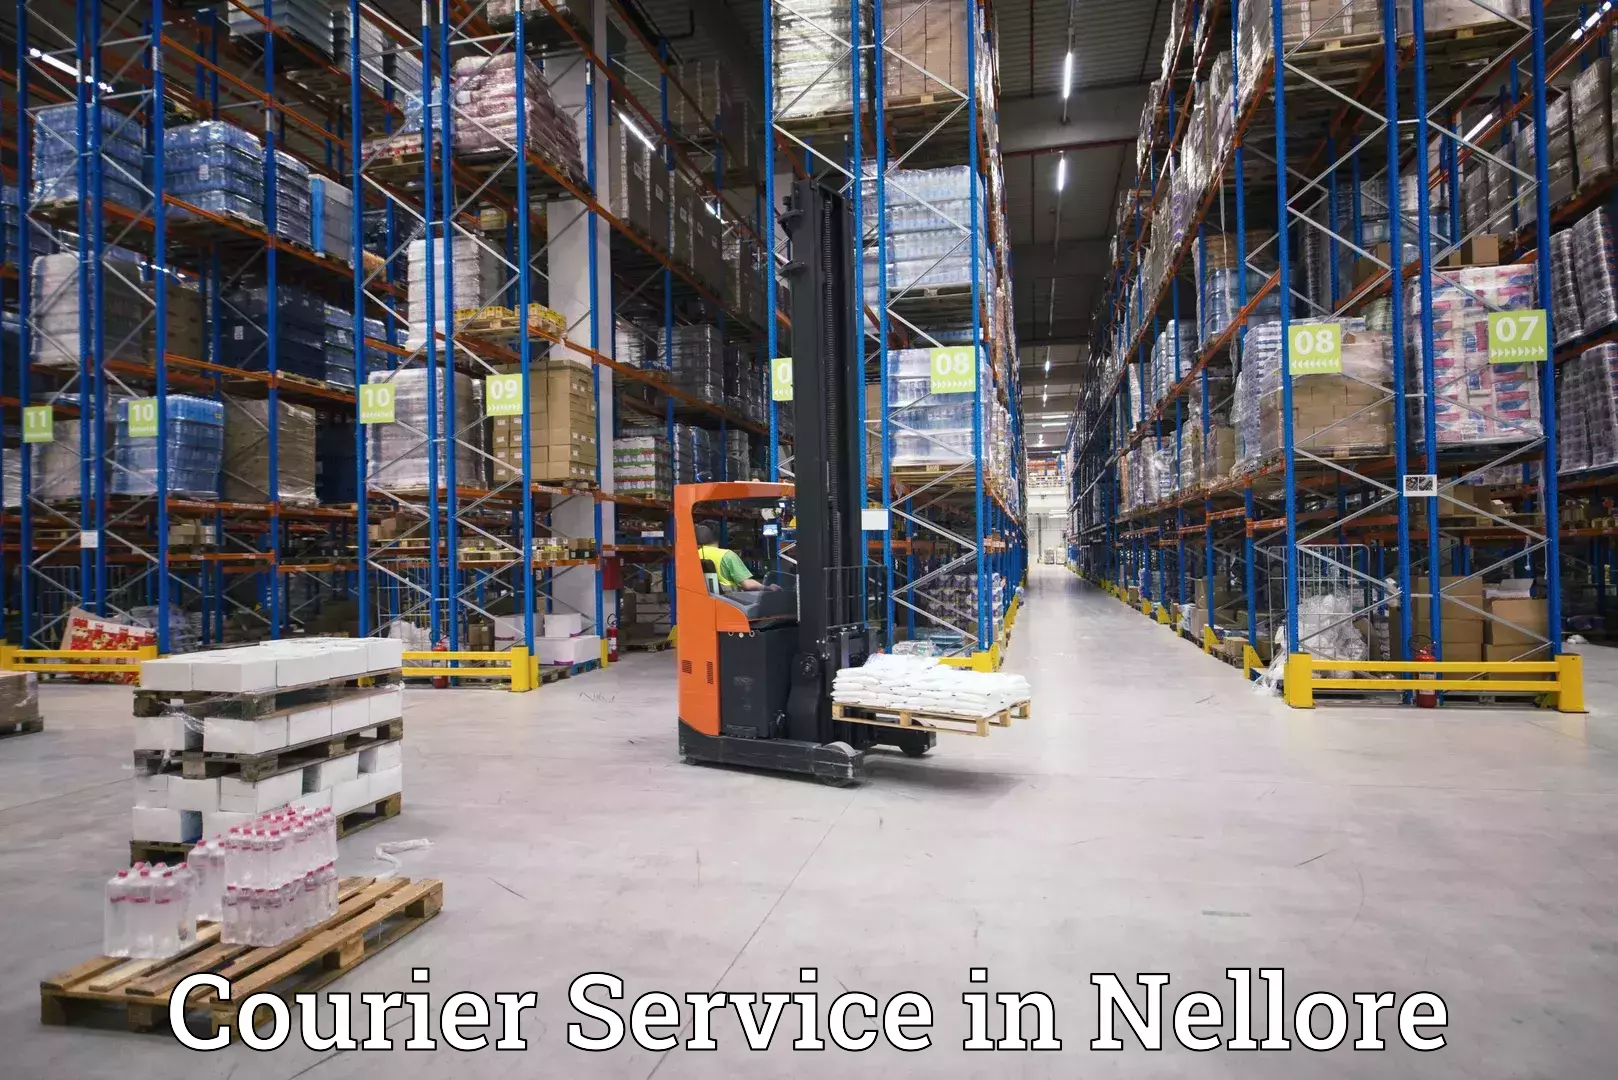 Comprehensive logistics solutions in Nellore